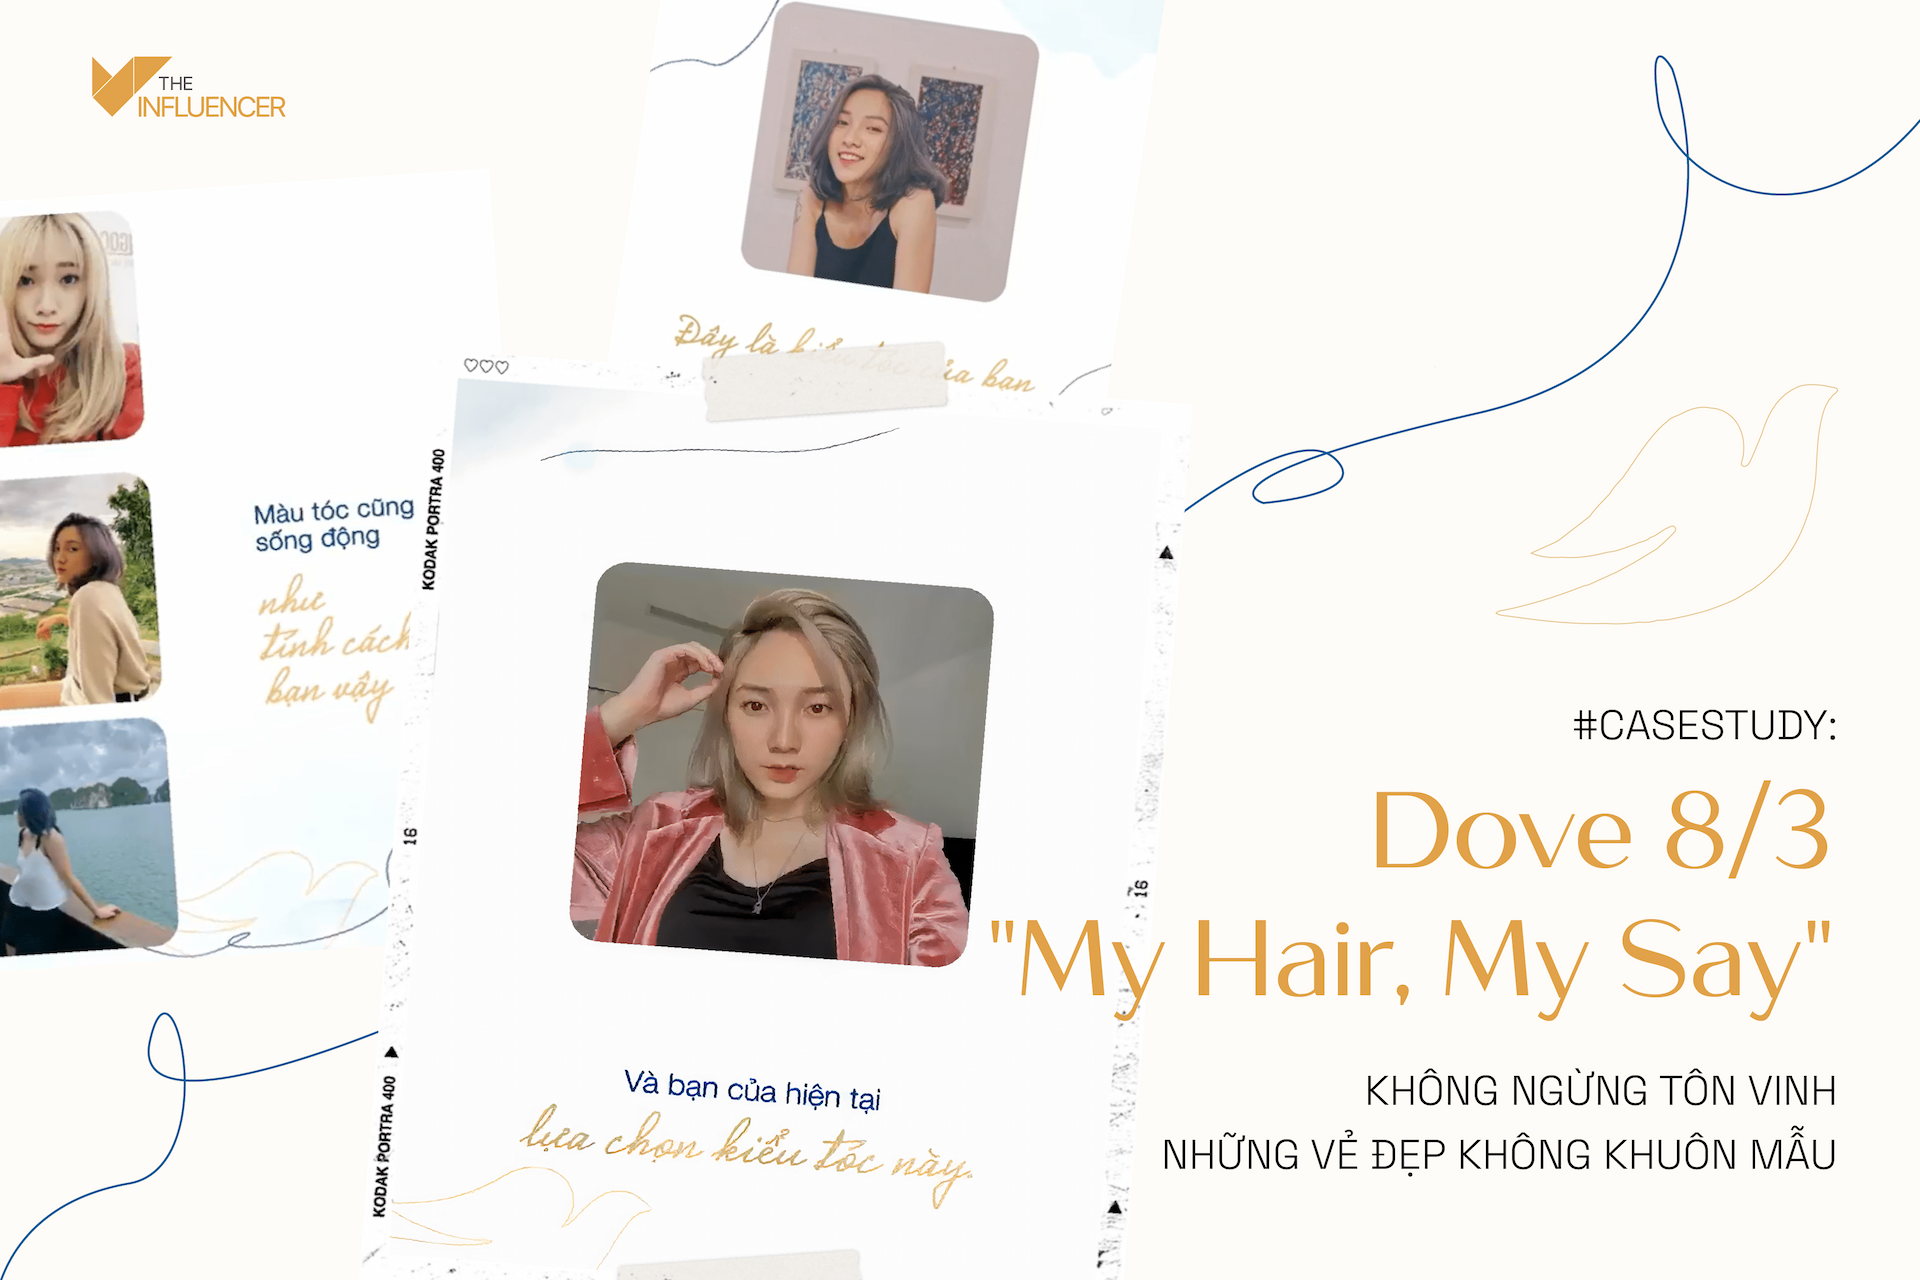 #Casestudy: Dove 8/3 “My Hair, My Say”: Không ngừng tôn vinh những vẻ đẹp không khuôn mẫu